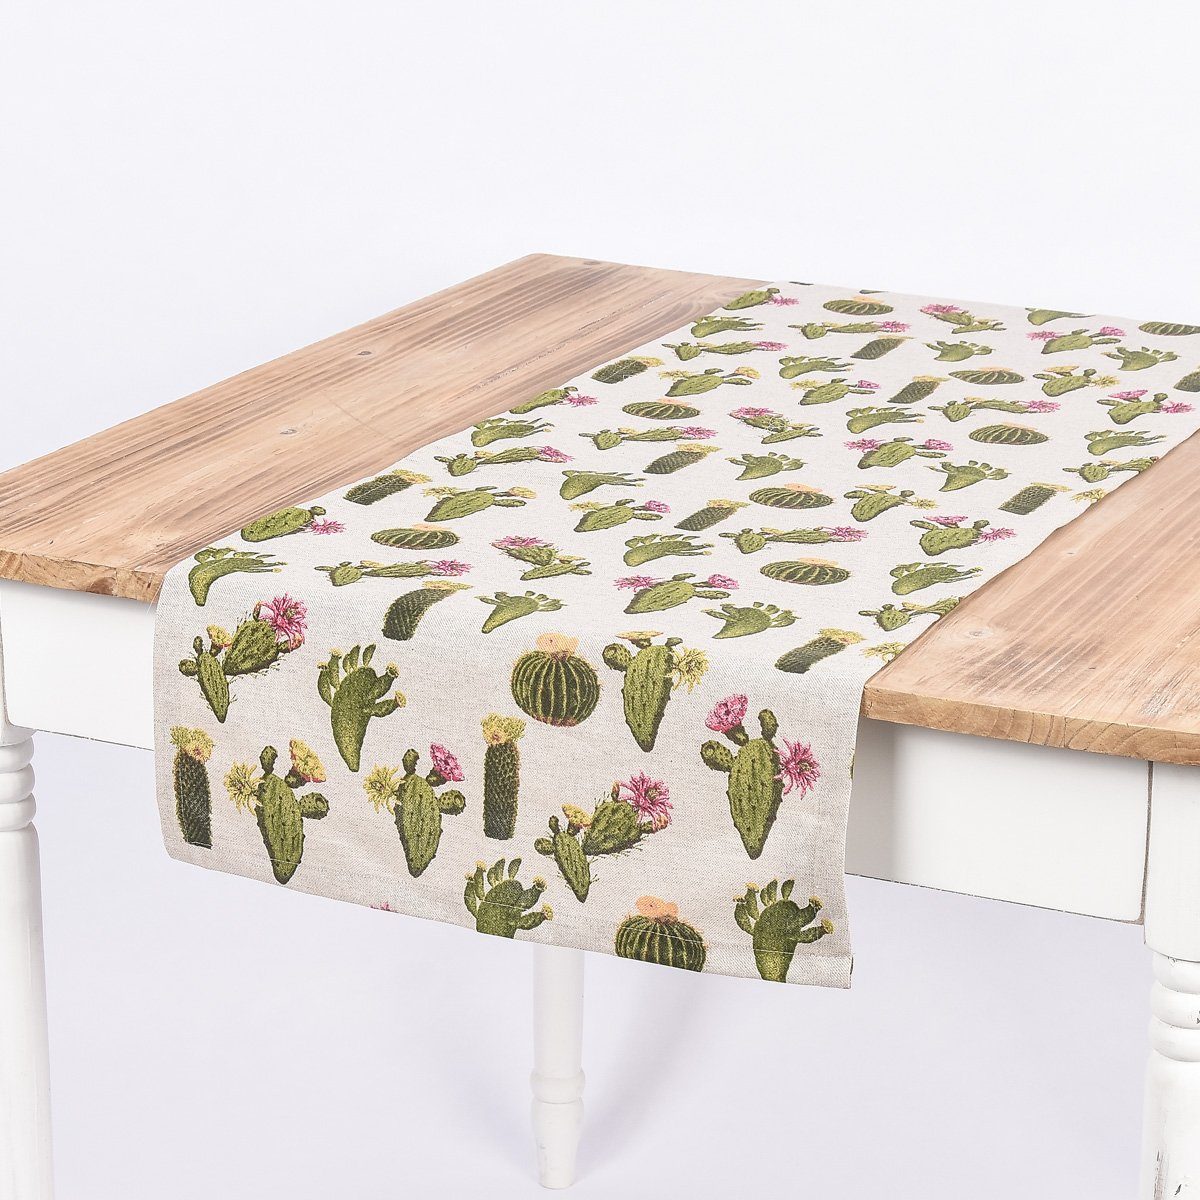 SCHÖNER LEBEN. Tischläufer Schöner Leben Tischläufer Kaktus natur grün 40x160cm, handmade